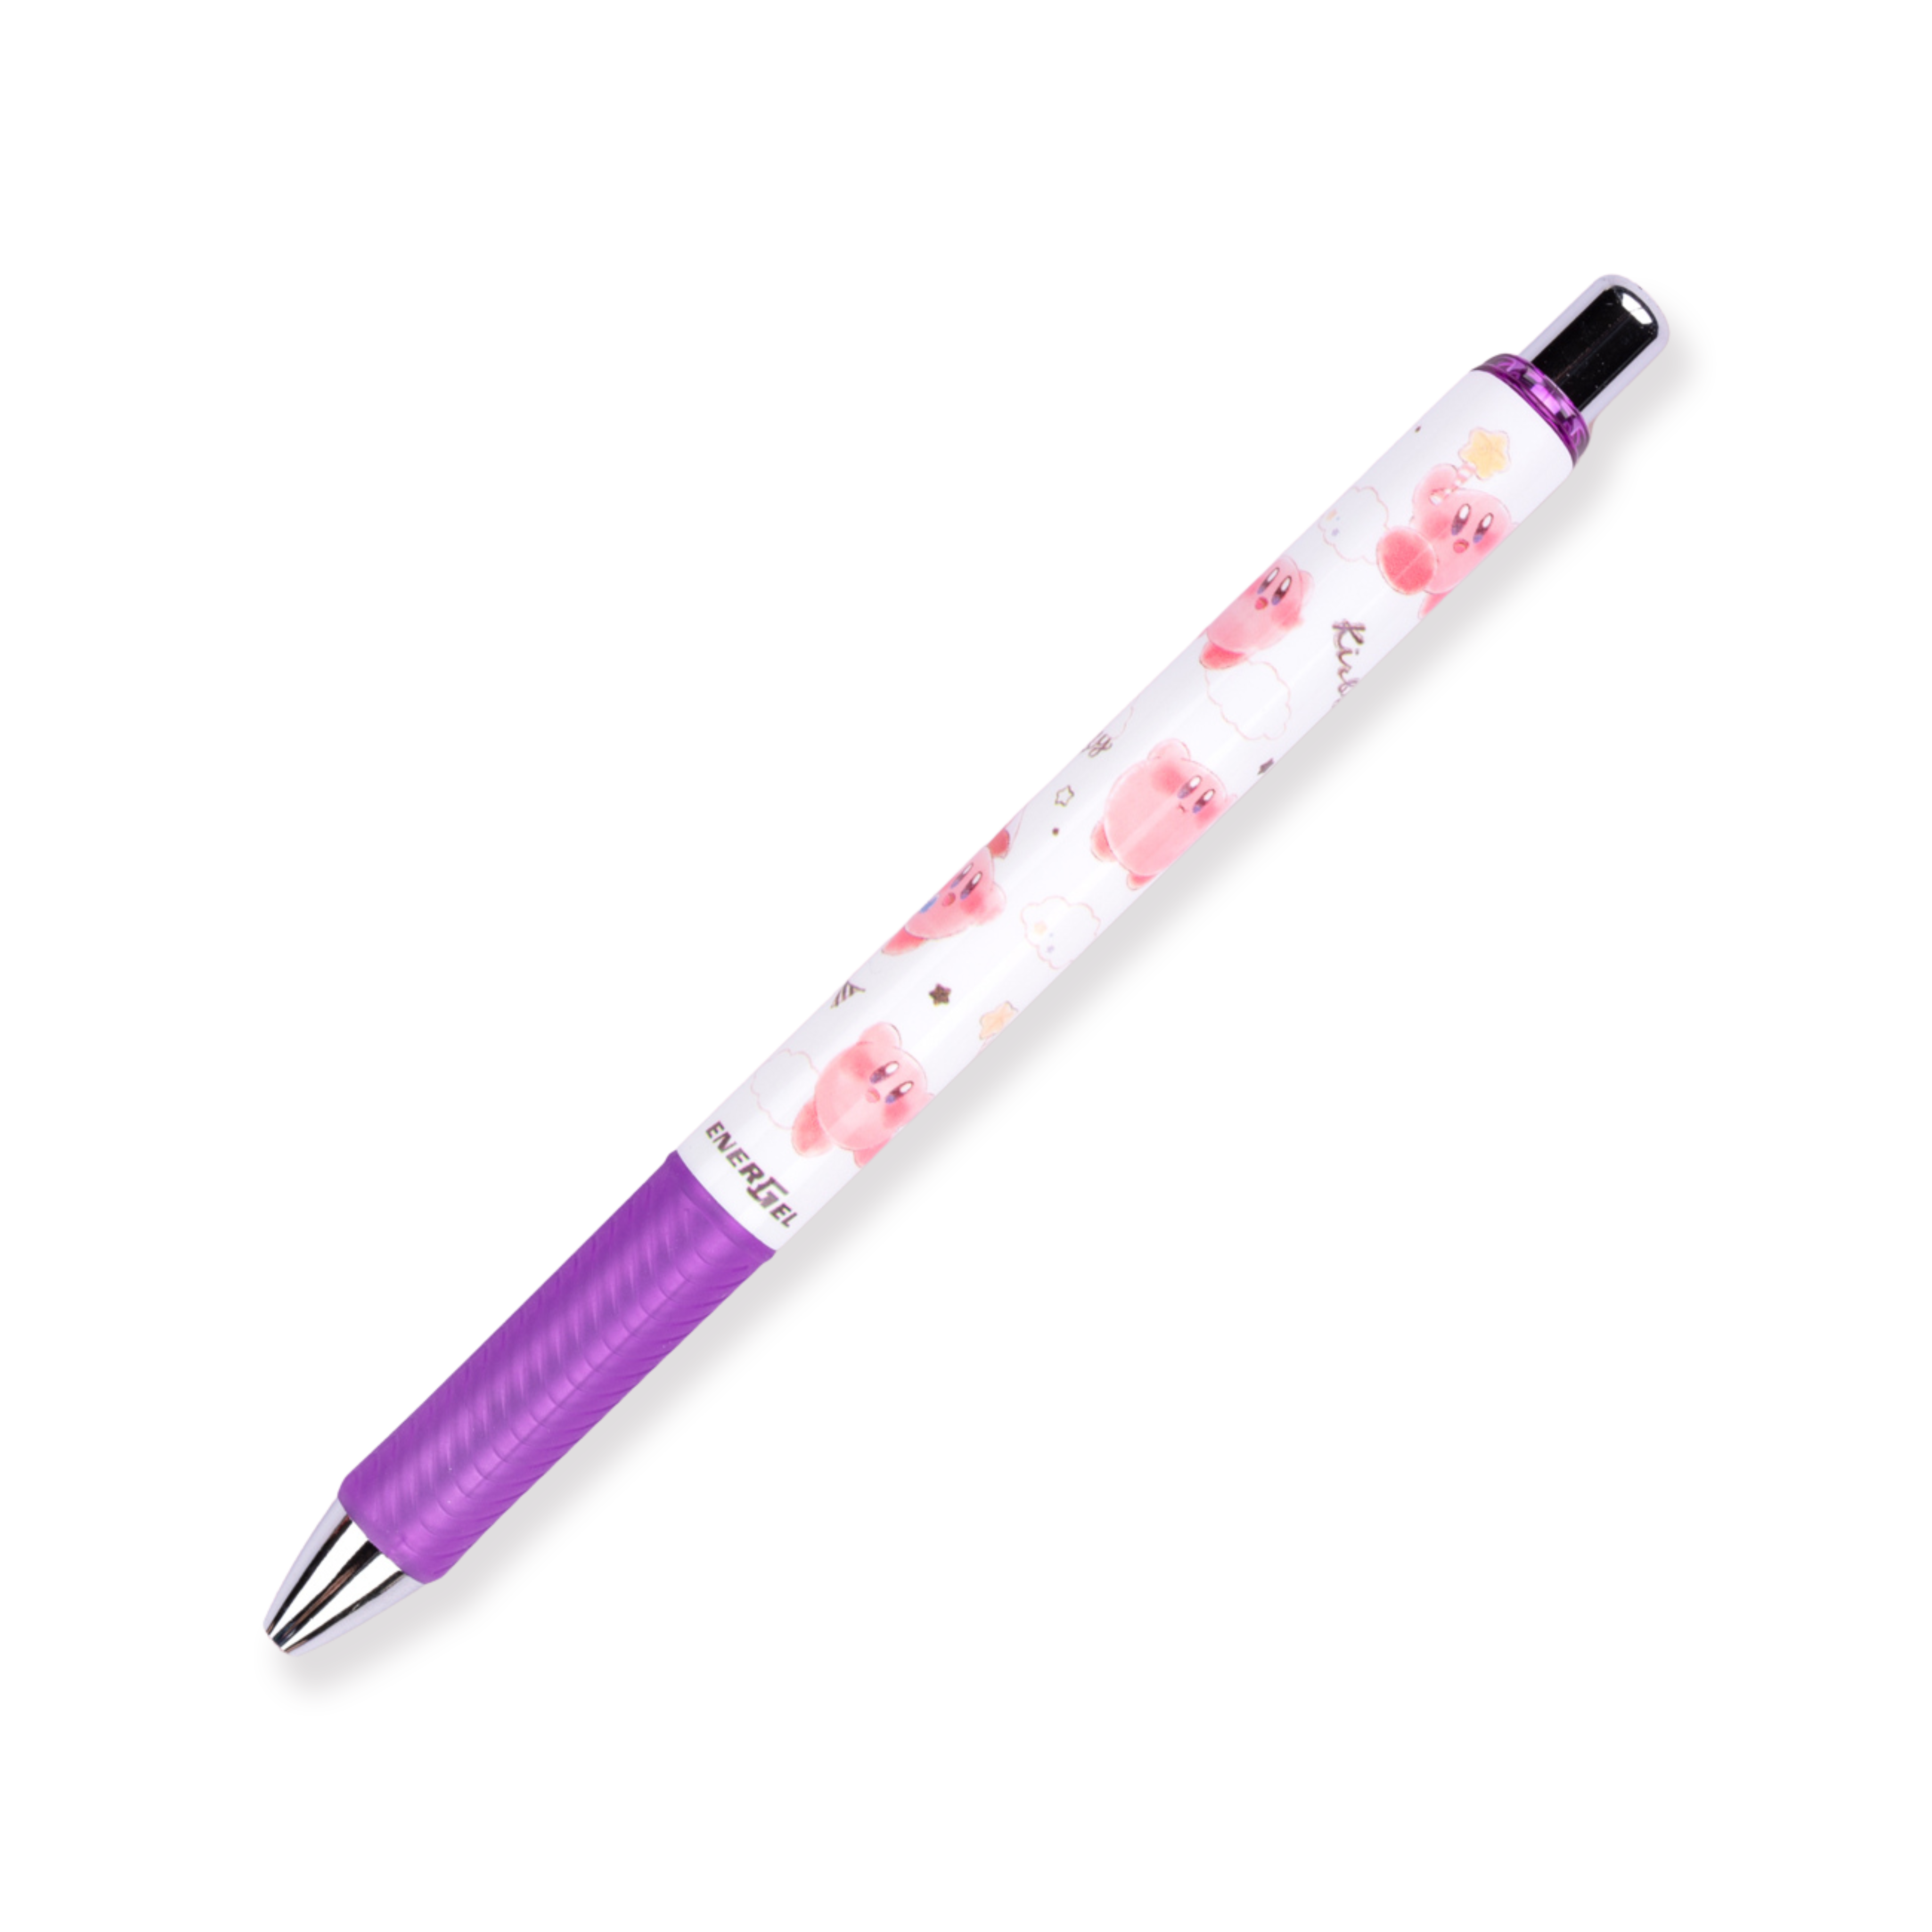 Bolígrafo de gel Pentel Energel × Kirby de edición limitada - 0,5 mm - Agarre morado